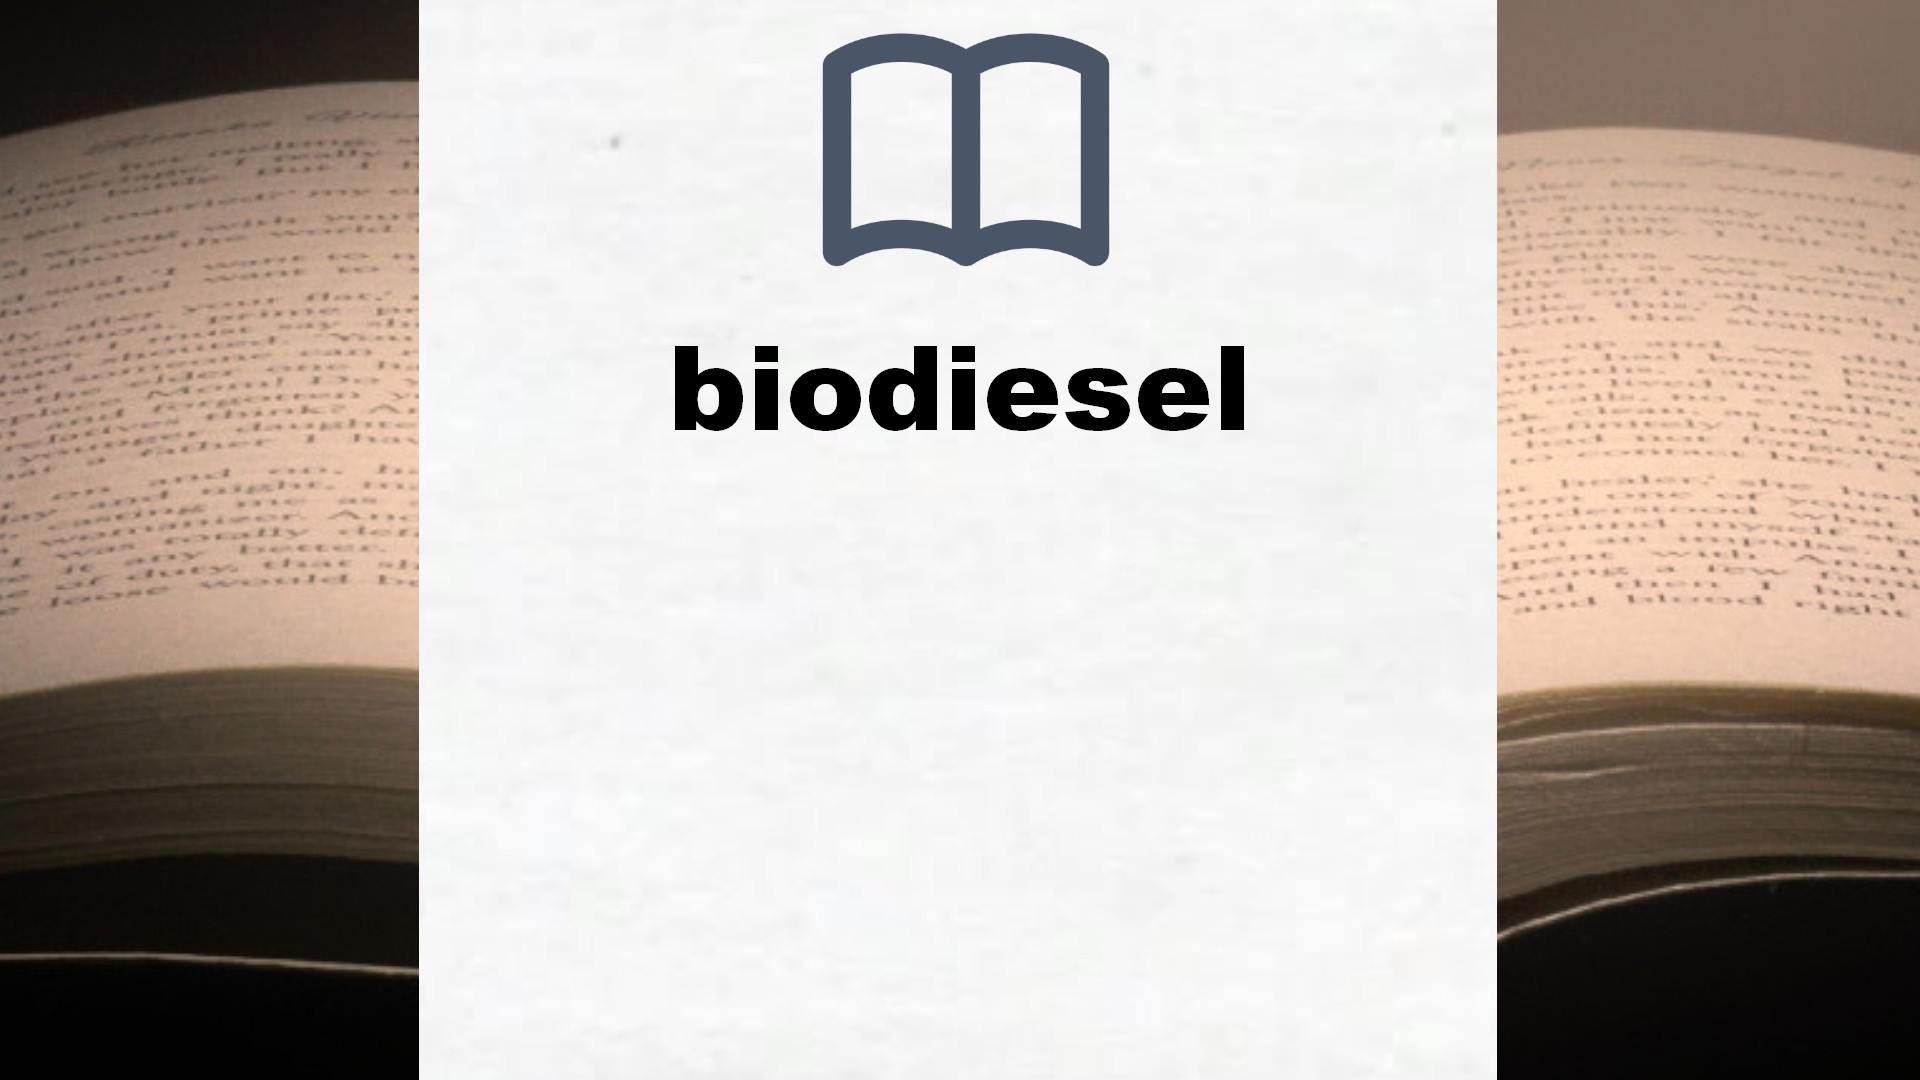 Libros sobre biodiesel